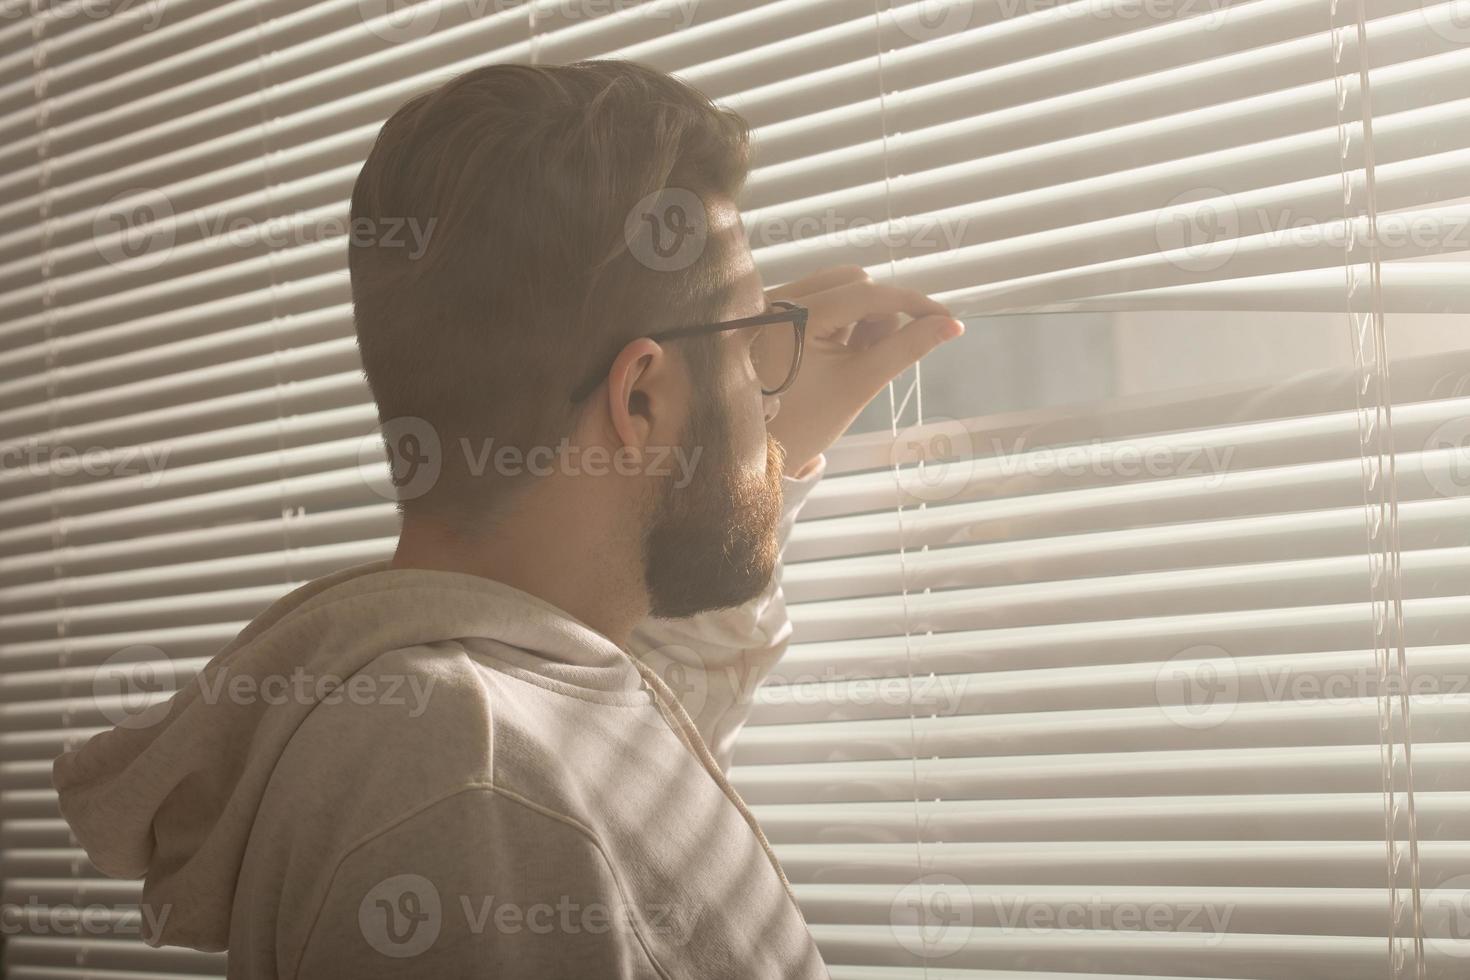 posteriore Visualizza di giovane uomo con barba sbircia attraverso buco nel il finestra persiane e sembra su in il strada. sorveglianza e curiosità concetto foto